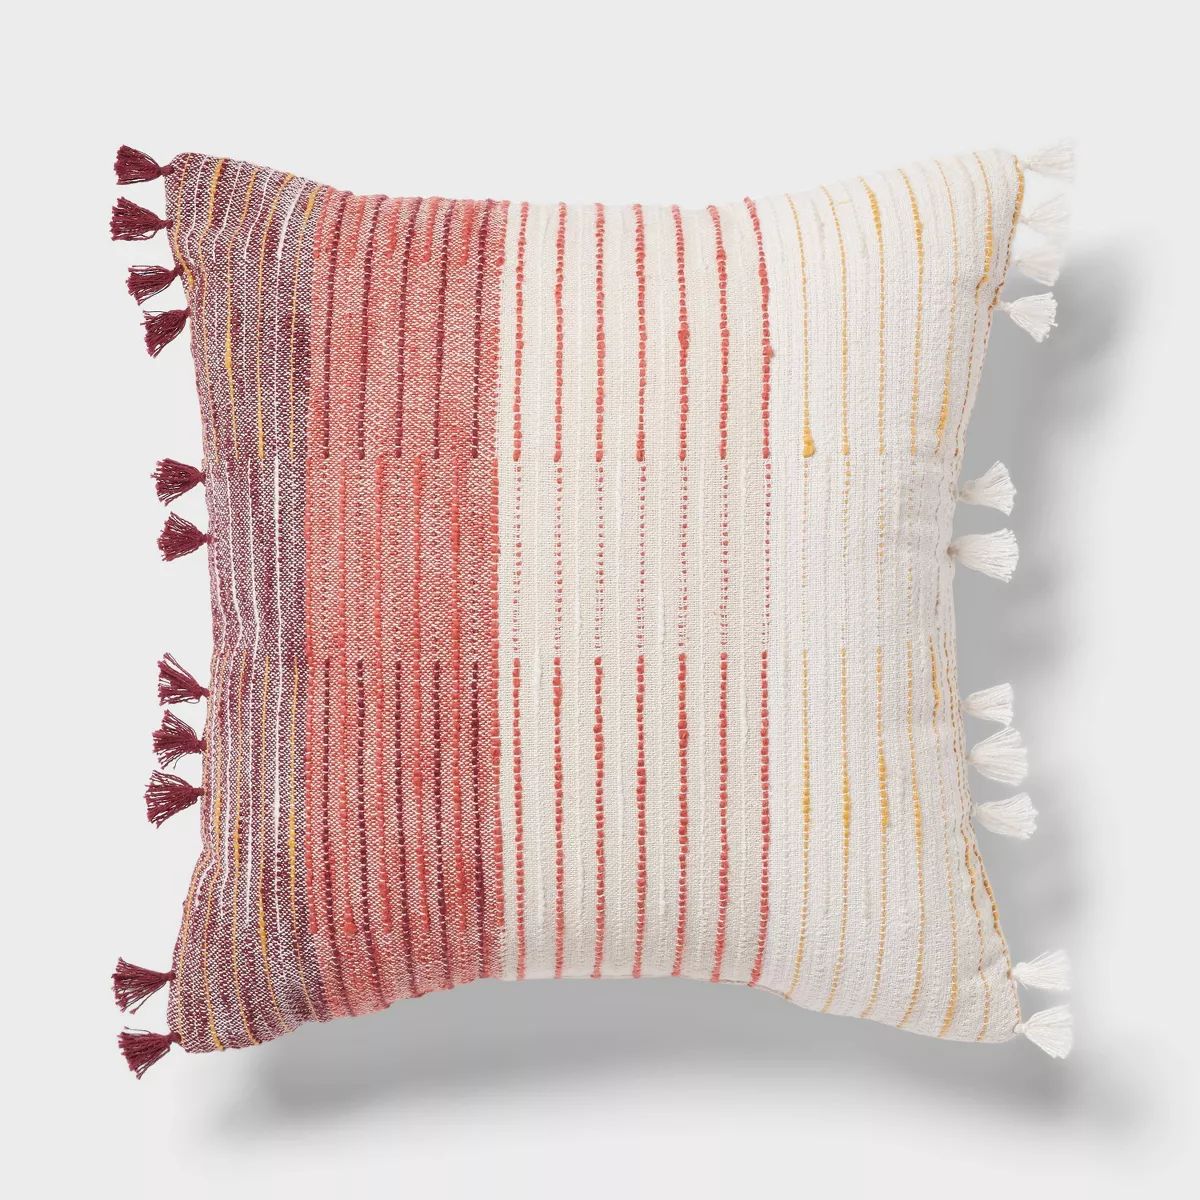 Boho Woven Linework Dec Pillow Oblong Ivory/Plum Red/Dark Salmon Orange - Threshold™ | Target